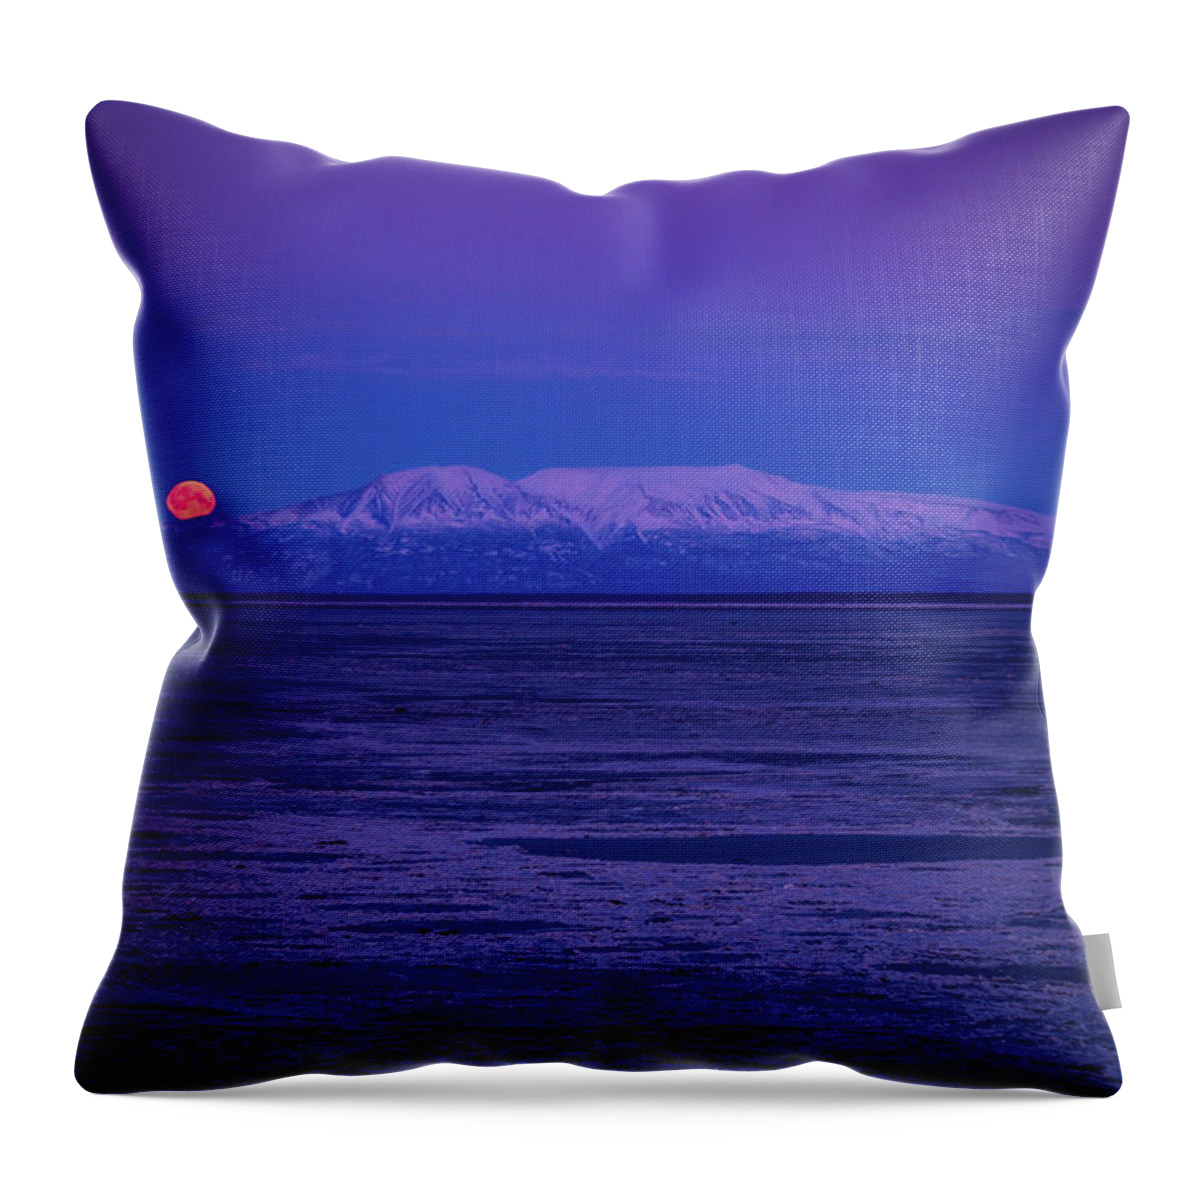 blue blood pillow